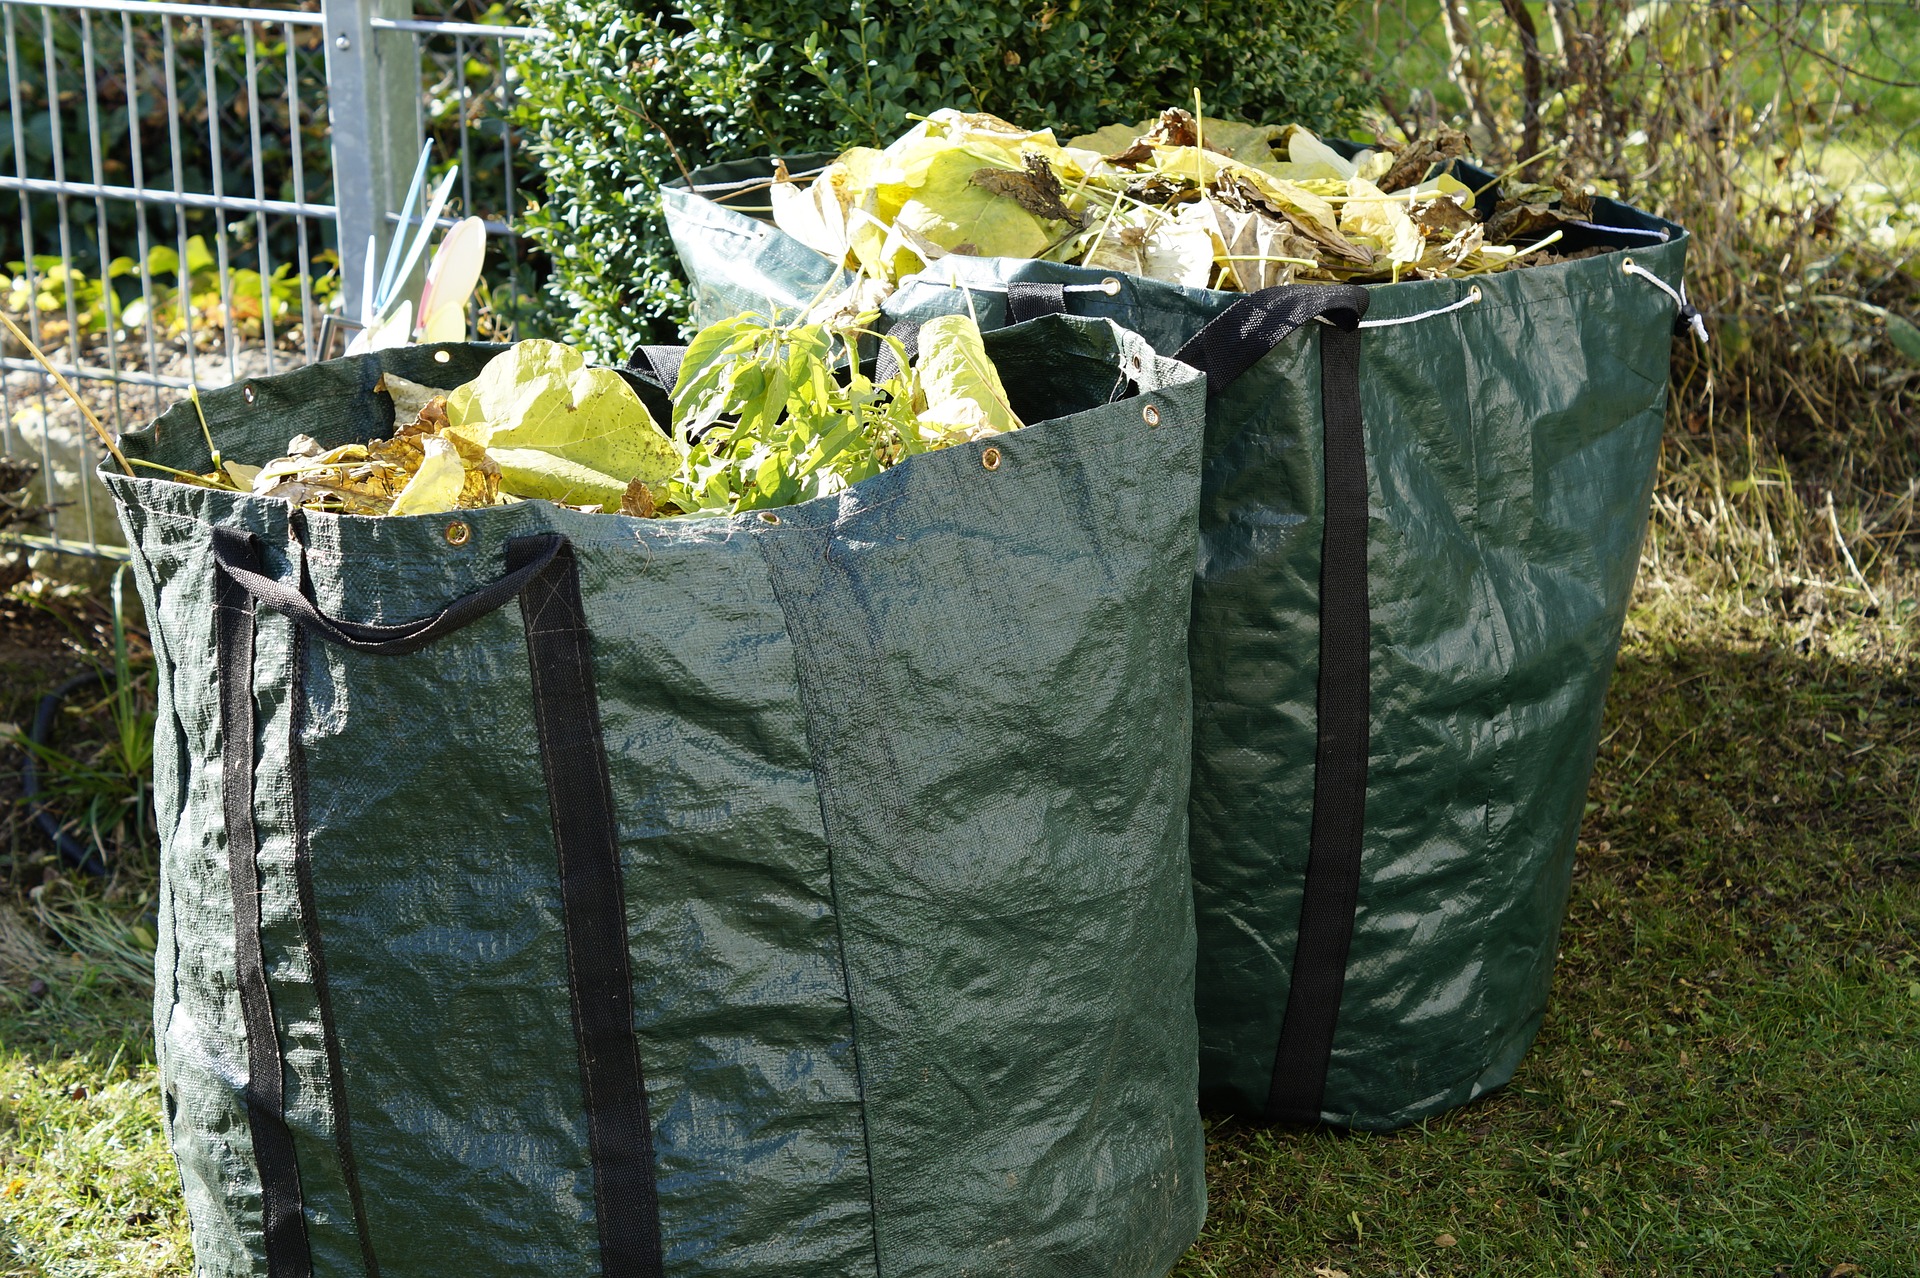 Bags of garden waste.